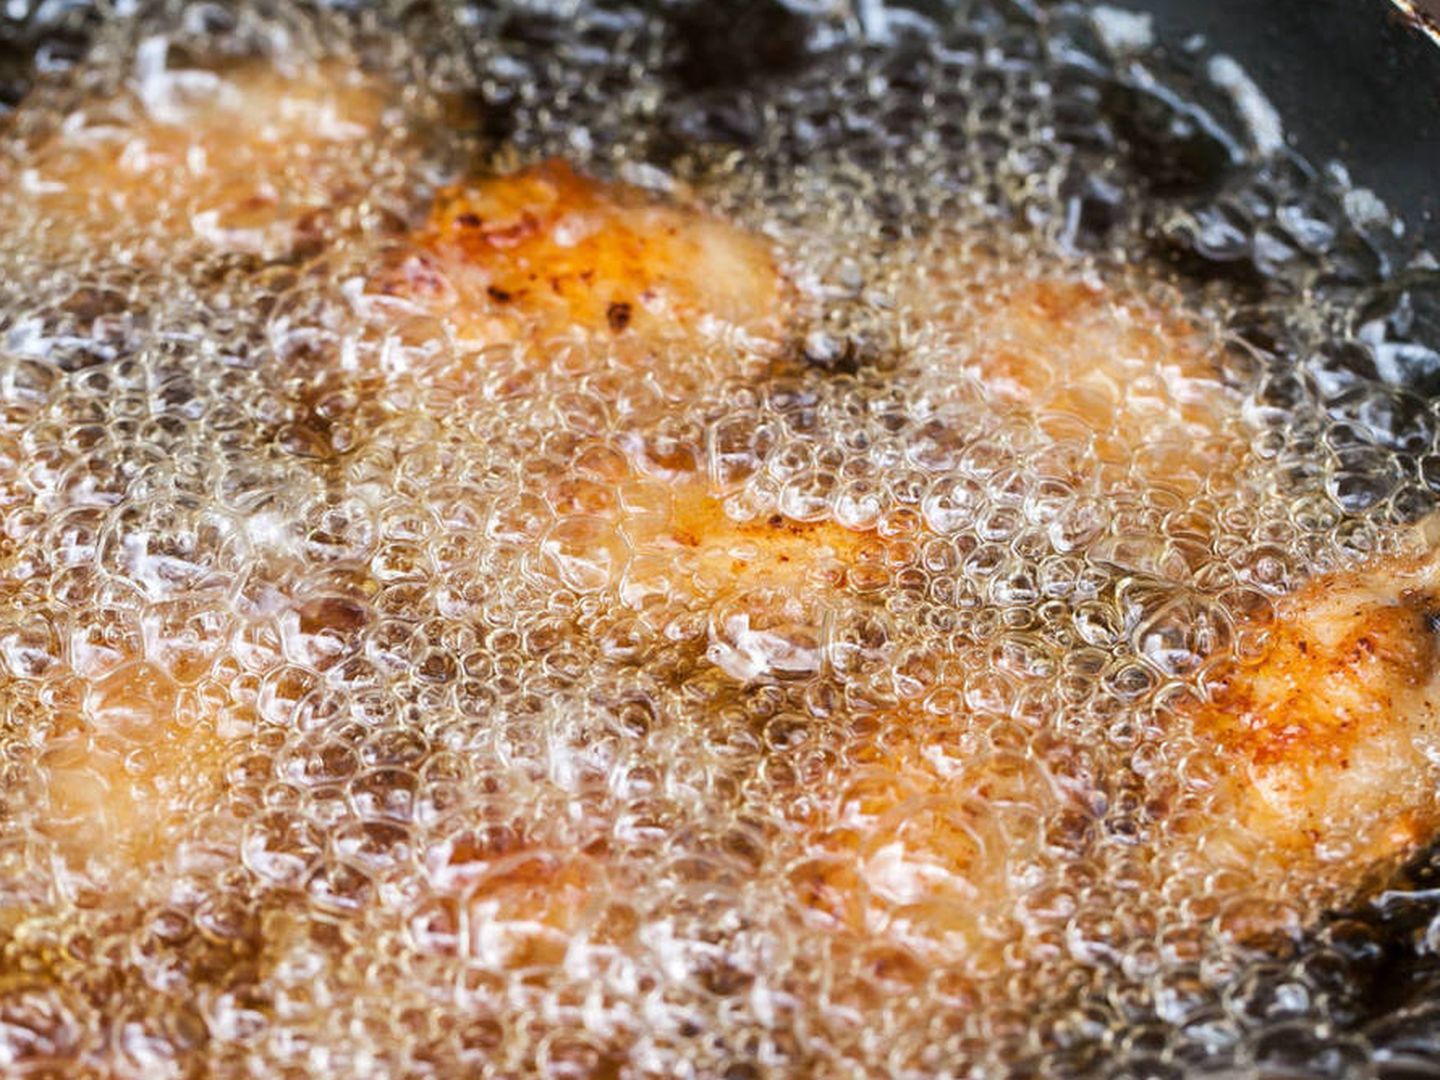 Son saludables los fritos con aceite de orujo? Responde la ciencia